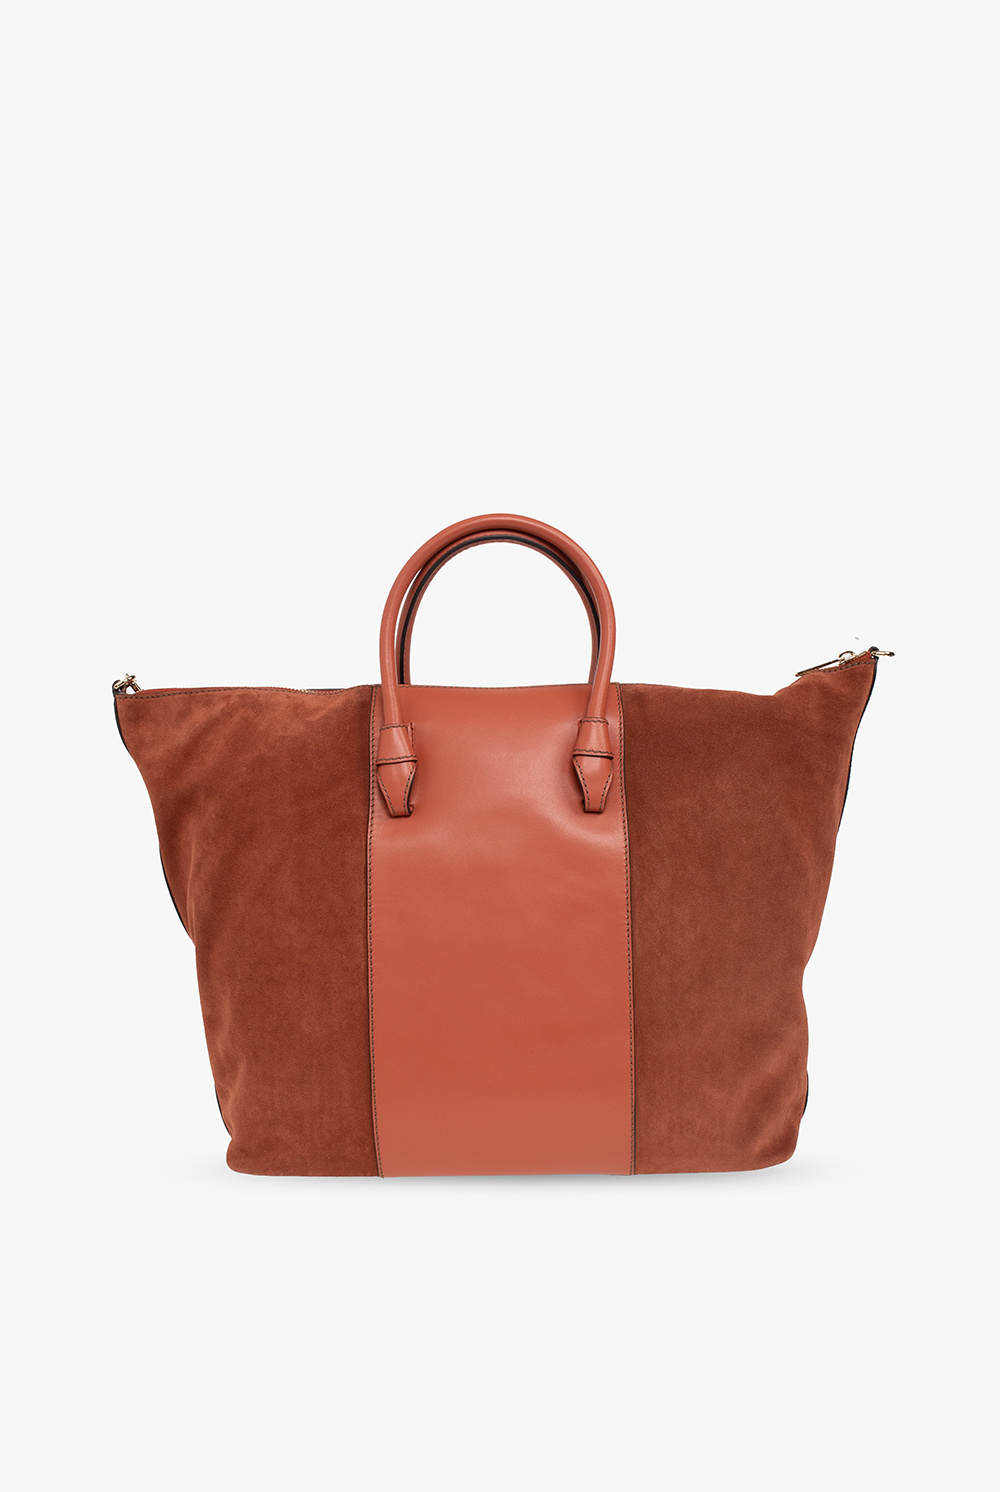 Furla Medium Tan/Brown Croc Embossed Leather Tote Bag Handbag Purse